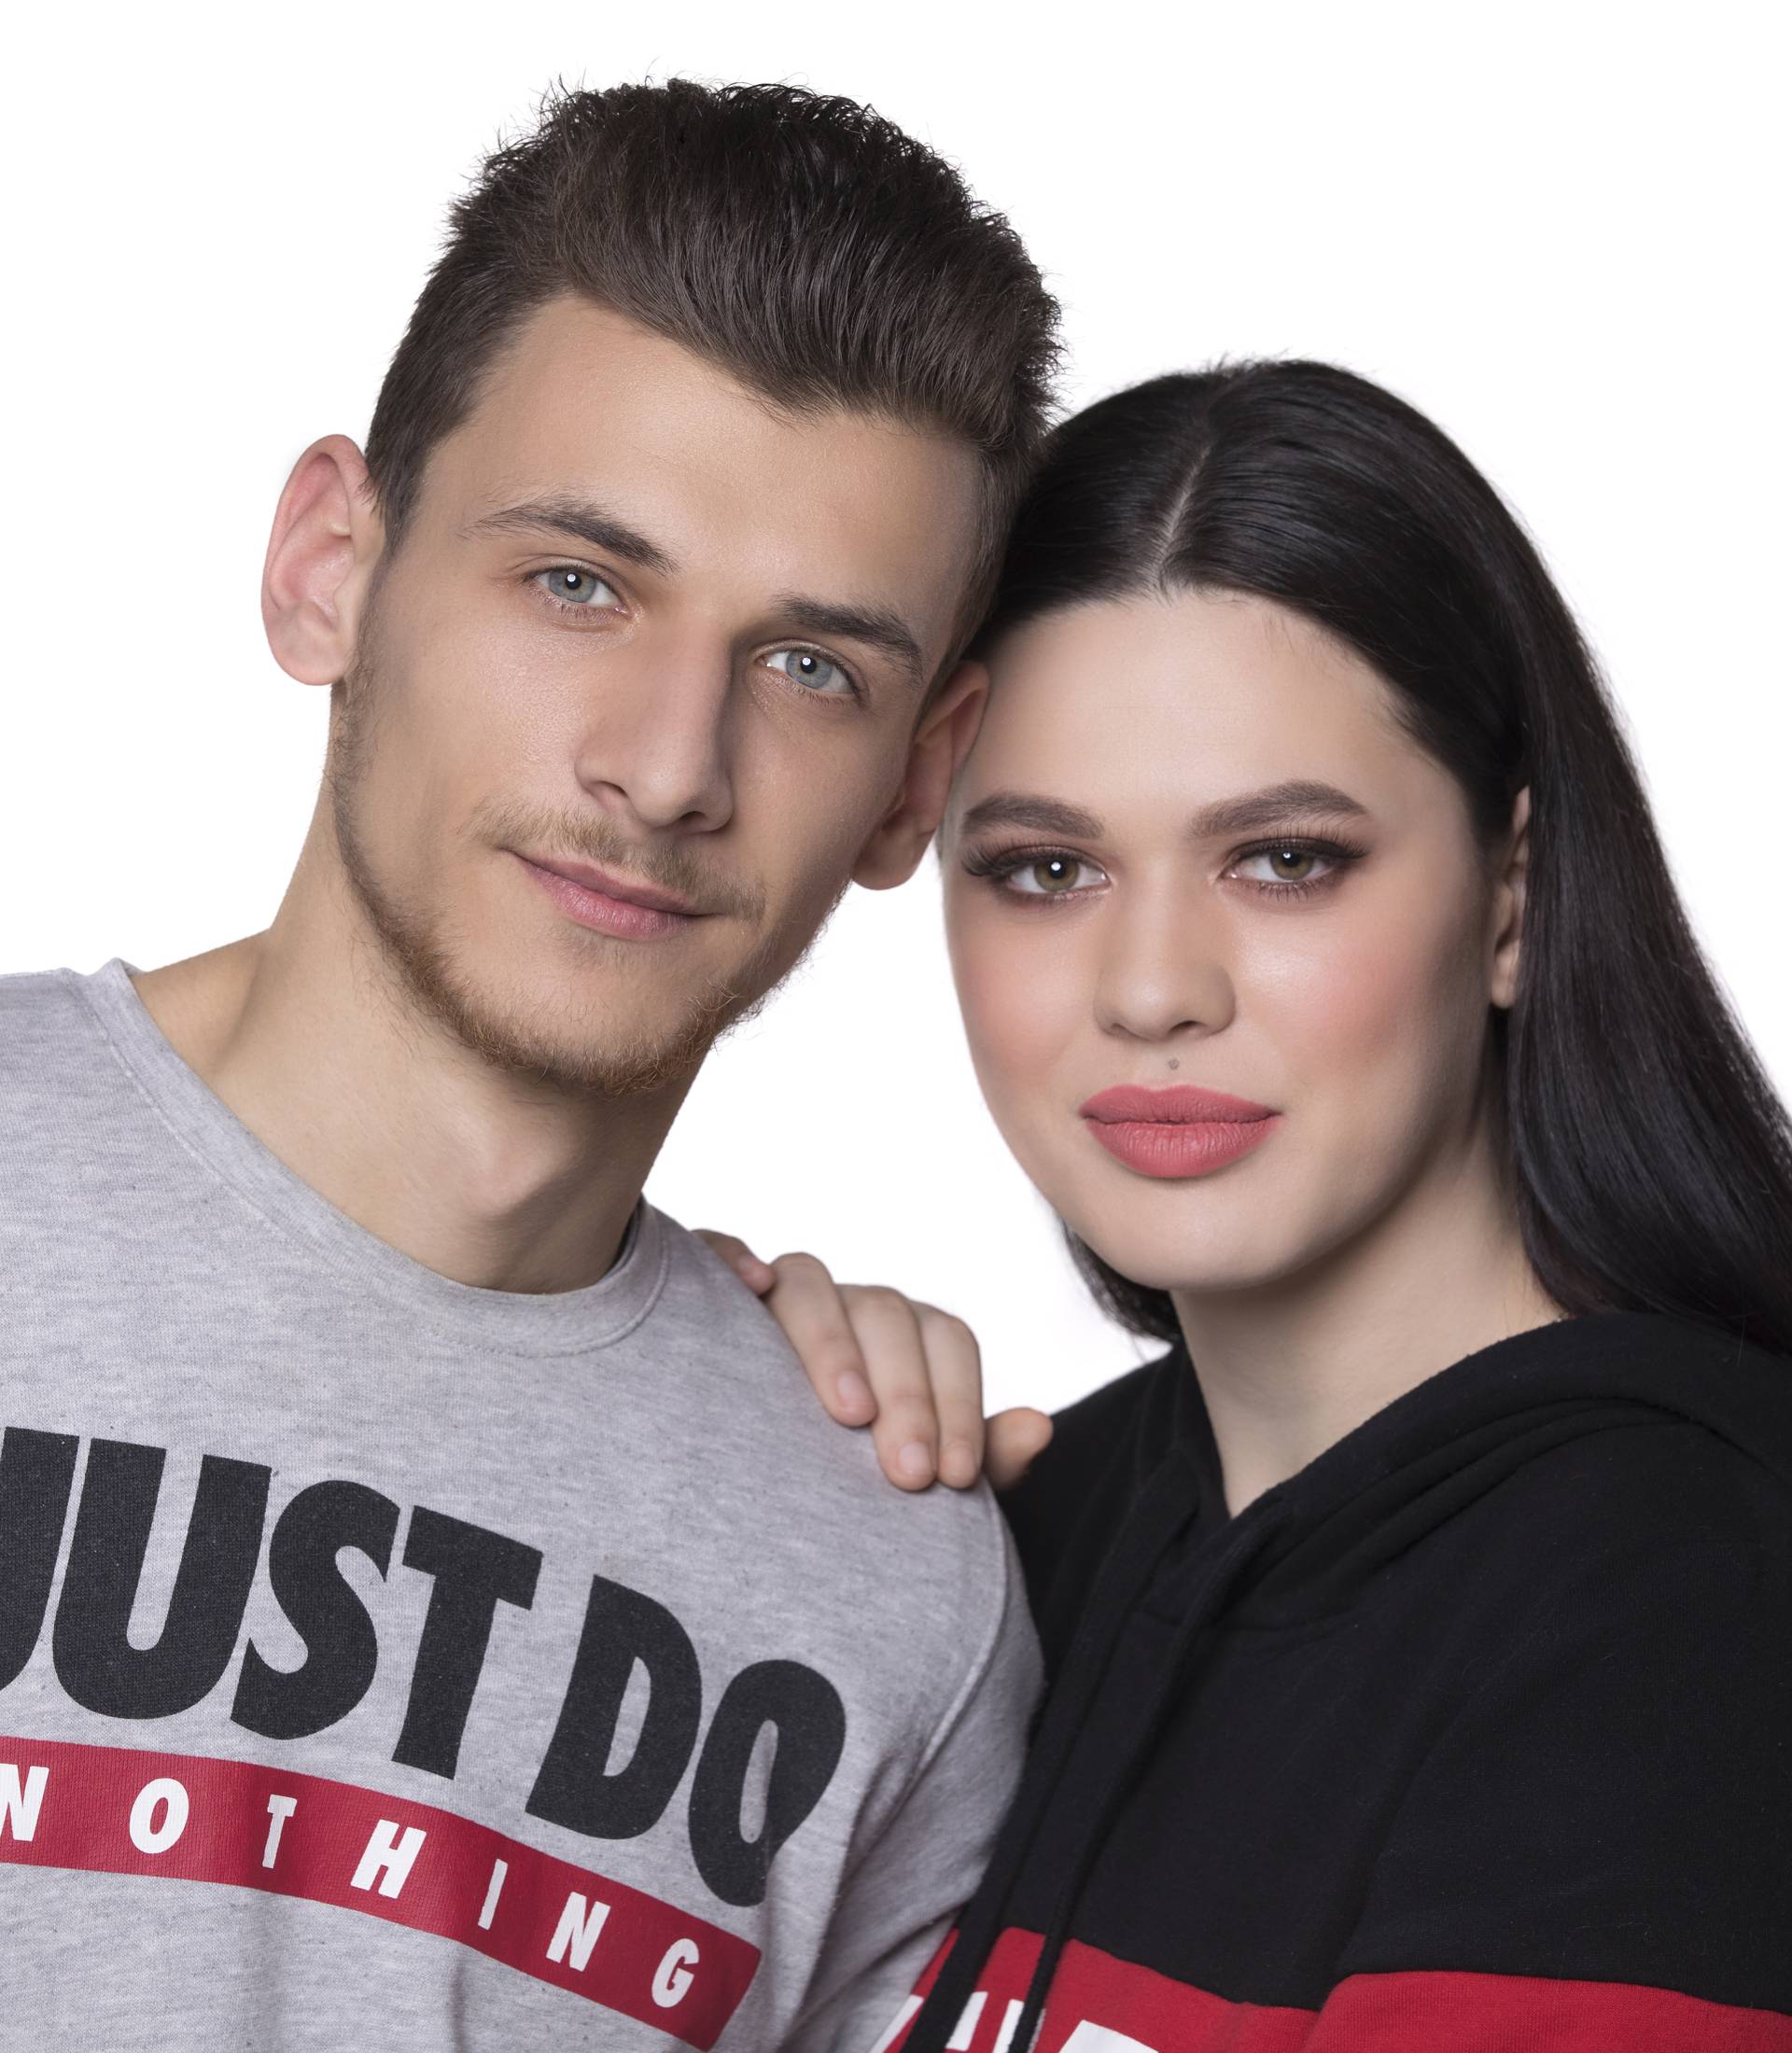 Superpar: Danijela i Josip će testirati vezu u novom showu